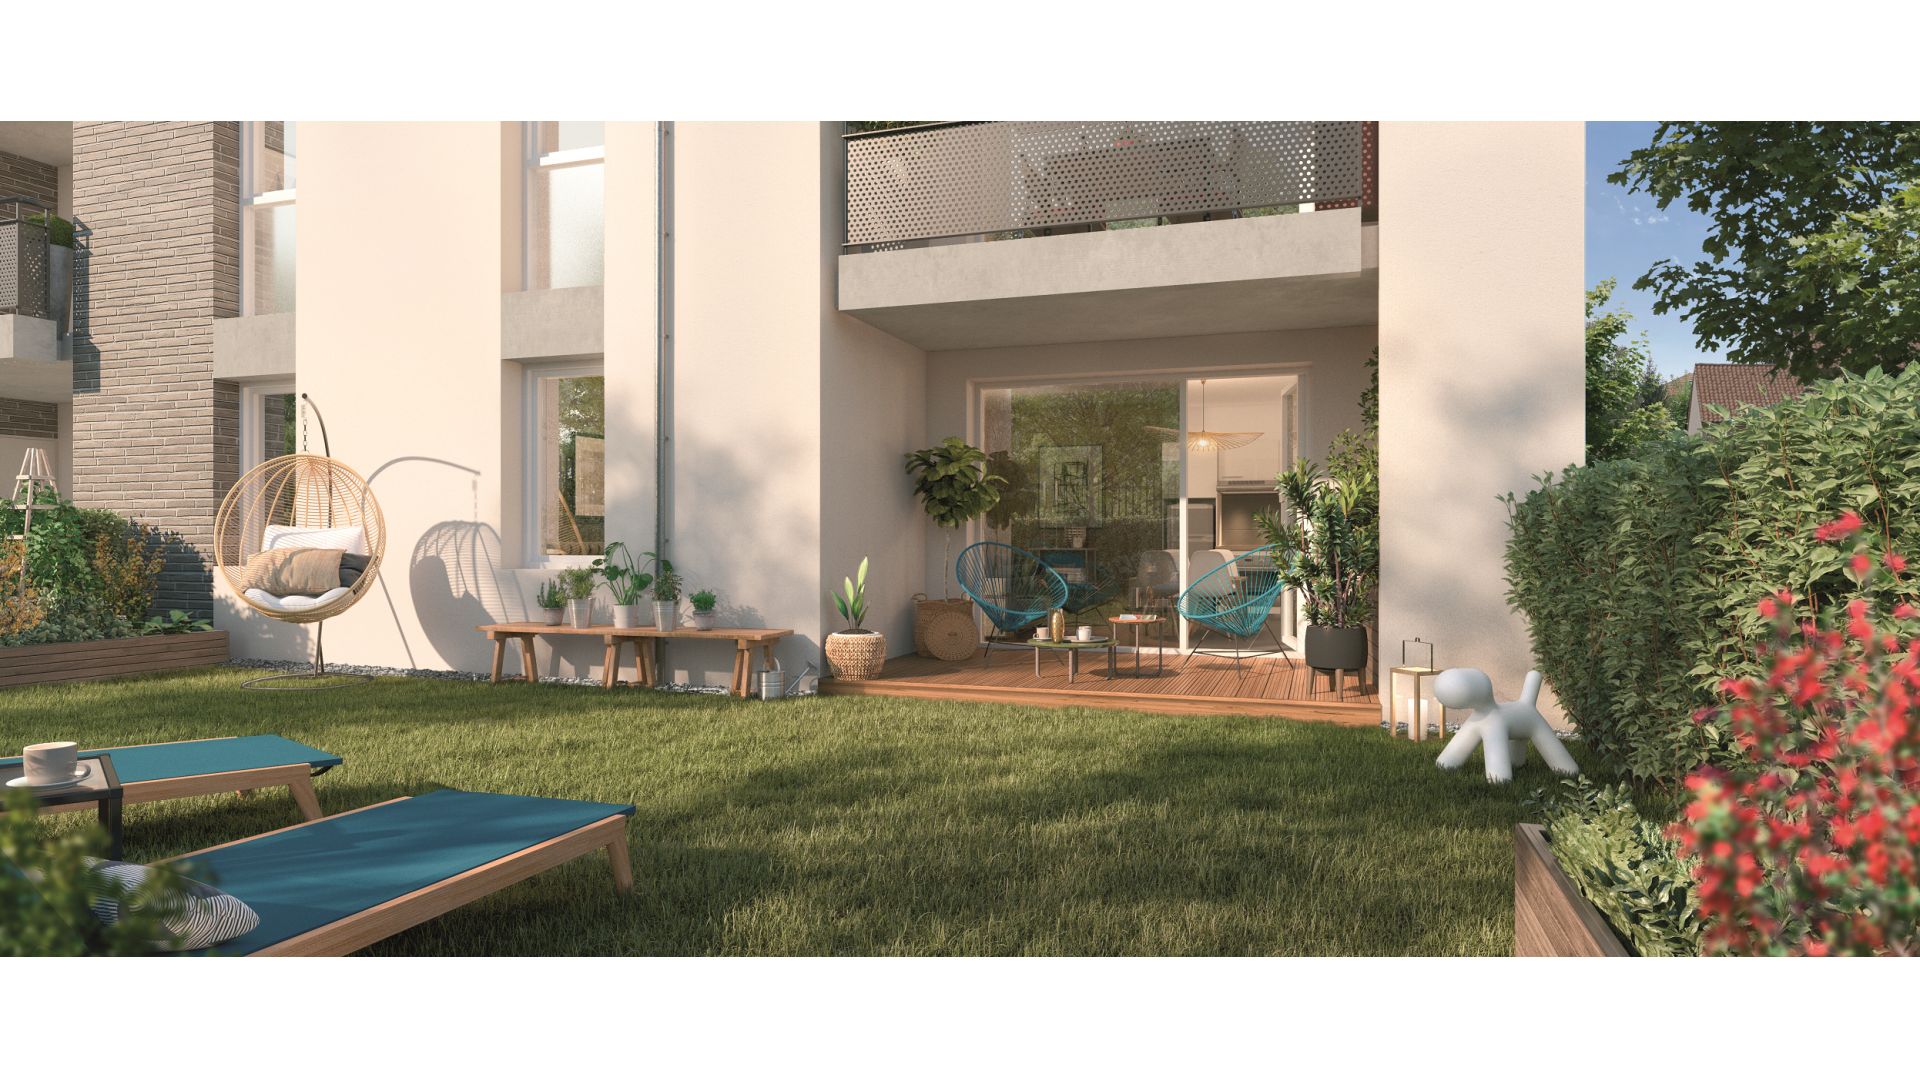 Greencity immobilier - achat appartements neufs du T2 au T3 - Résidence Villa Angelo - 31600 Eaunes - vue terrasse